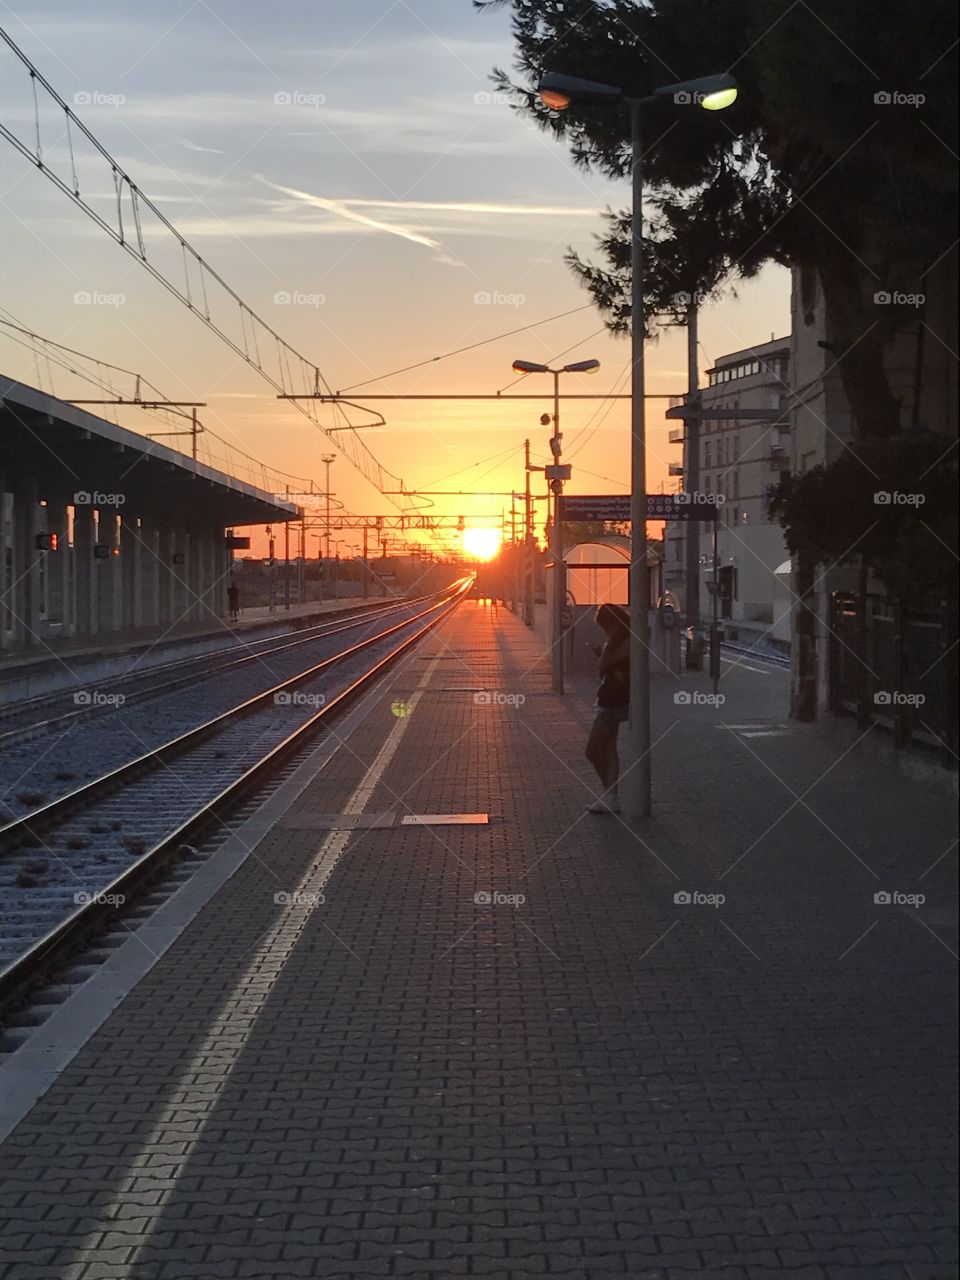 Like the sun, bye bye train